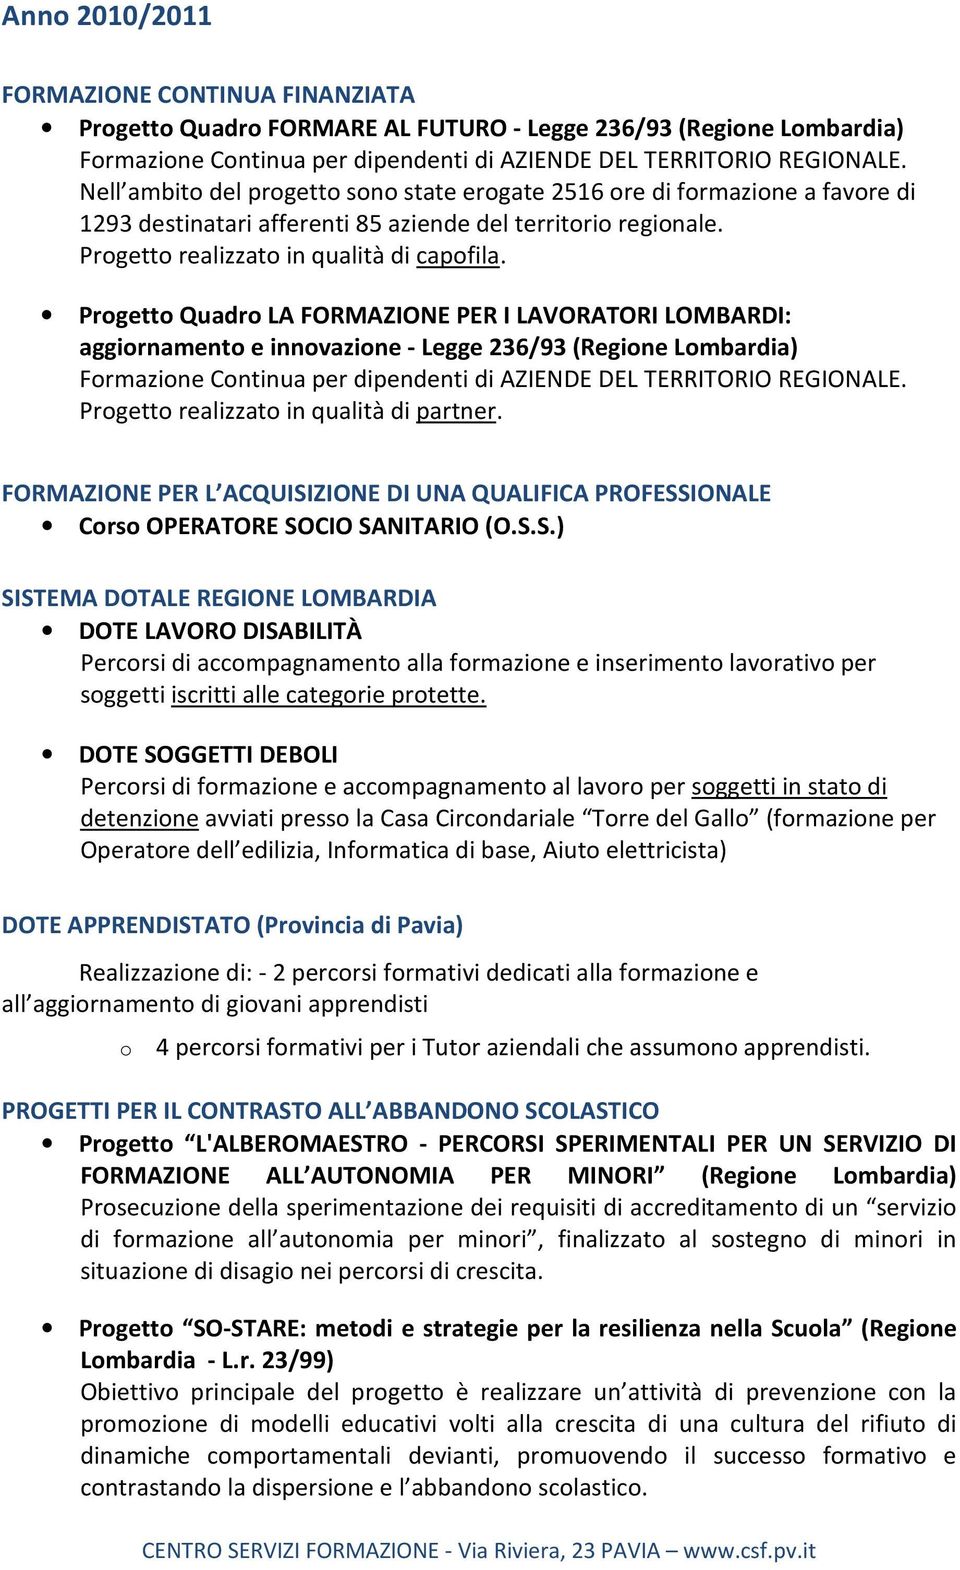 Progetto Quadro LA FORMAZIONE PER I LAVORATORI LOMBARDI: aggiornamento e innovazione - Legge 236/93 (Regione Lombardia) Formazione Continua per dipendenti di AZIENDE DEL TERRITORIO REGIONALE.